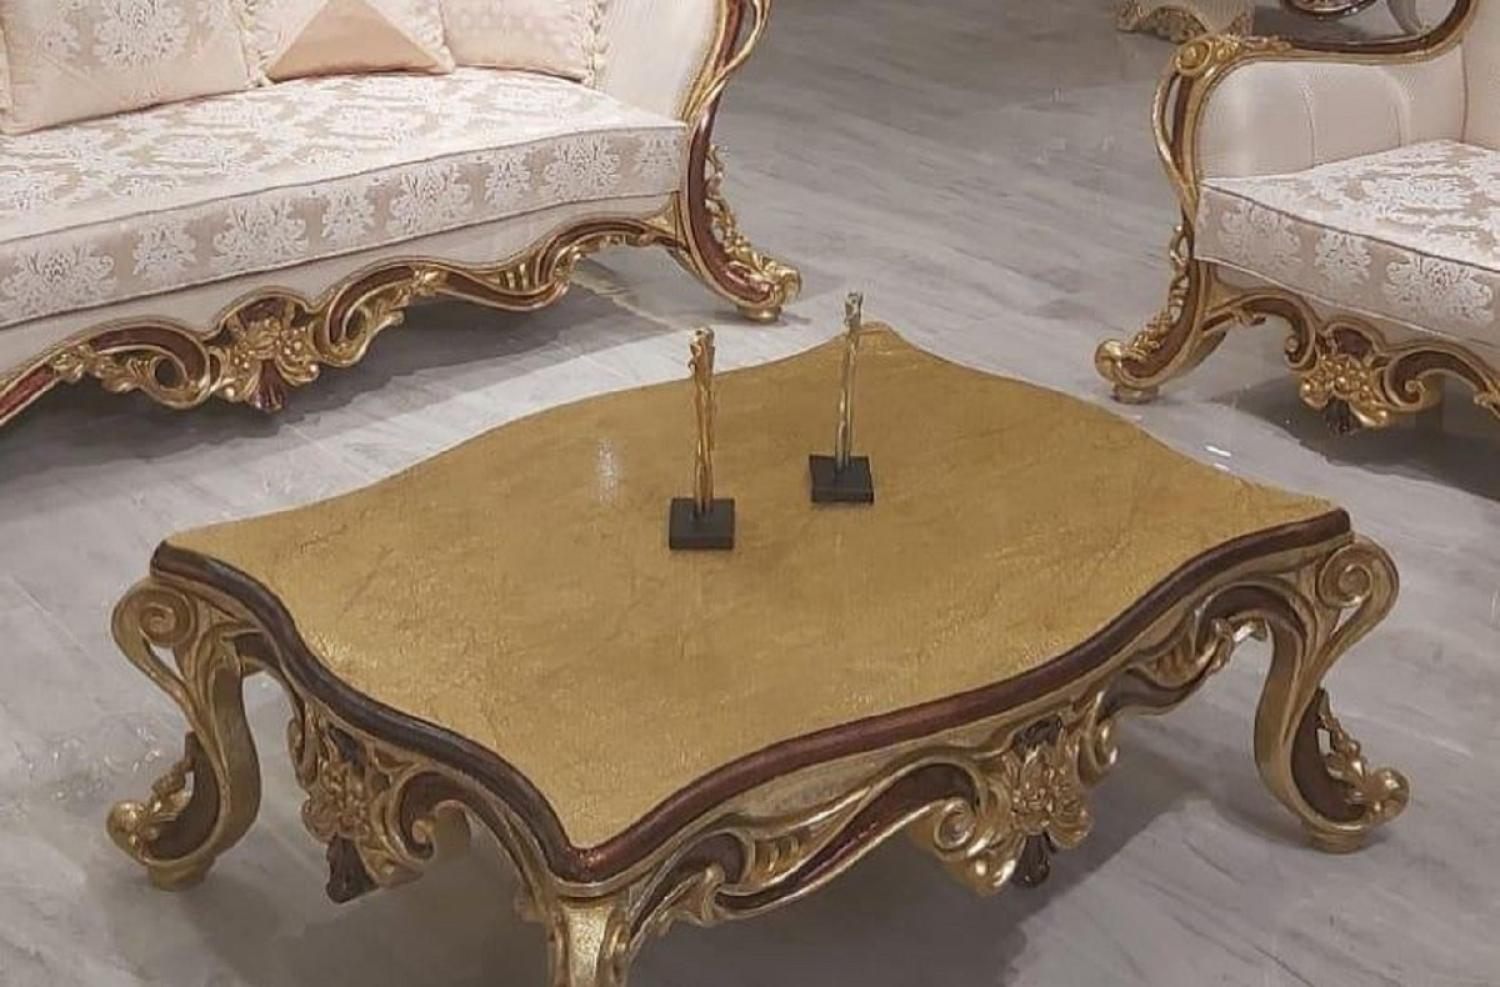 Casa Padrino Luxus Barock Couchtisch Gold / Braun - Eleganter Massivholz Wohnzimmertisch im Barockstil - Barock Wohnzimmer Möbel - Edel & Prunkvoll Bild 1